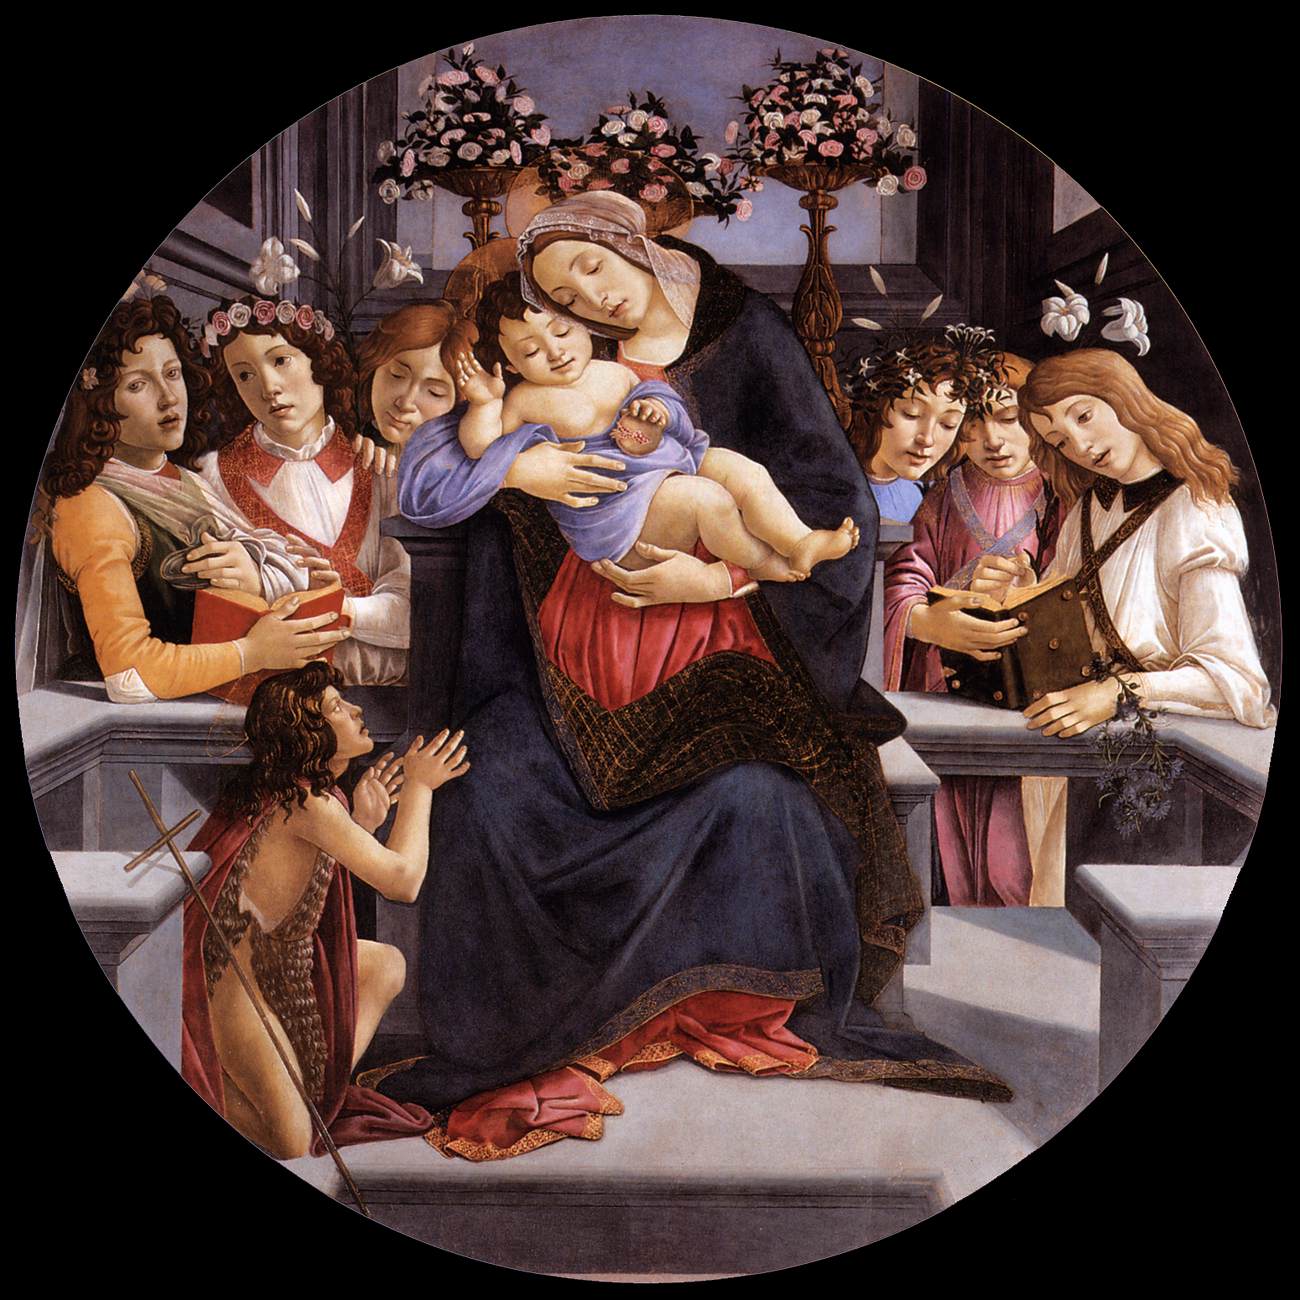 הבתולה והילד עם שישה מלאכים והבפטיסט